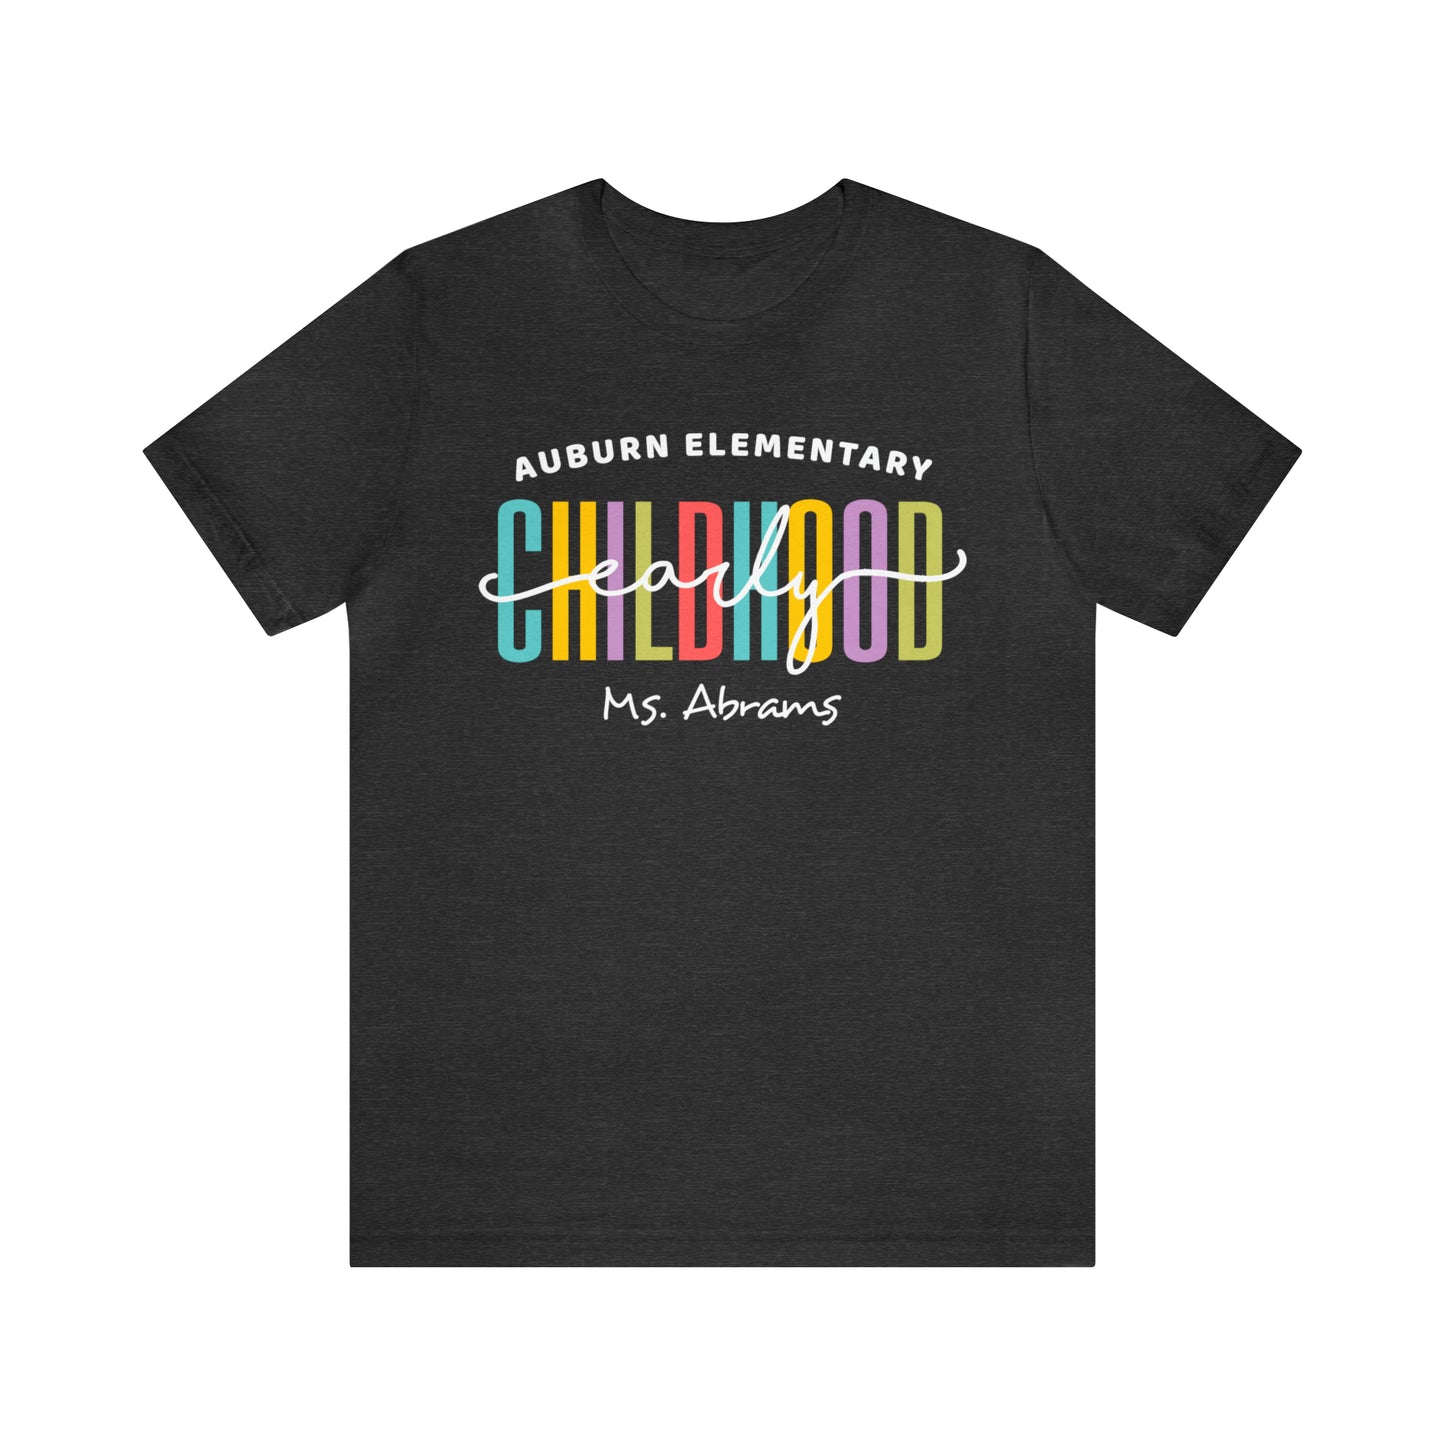 Early Childhood Teacher Team Shirt - Personalized Teacher Team Shirt